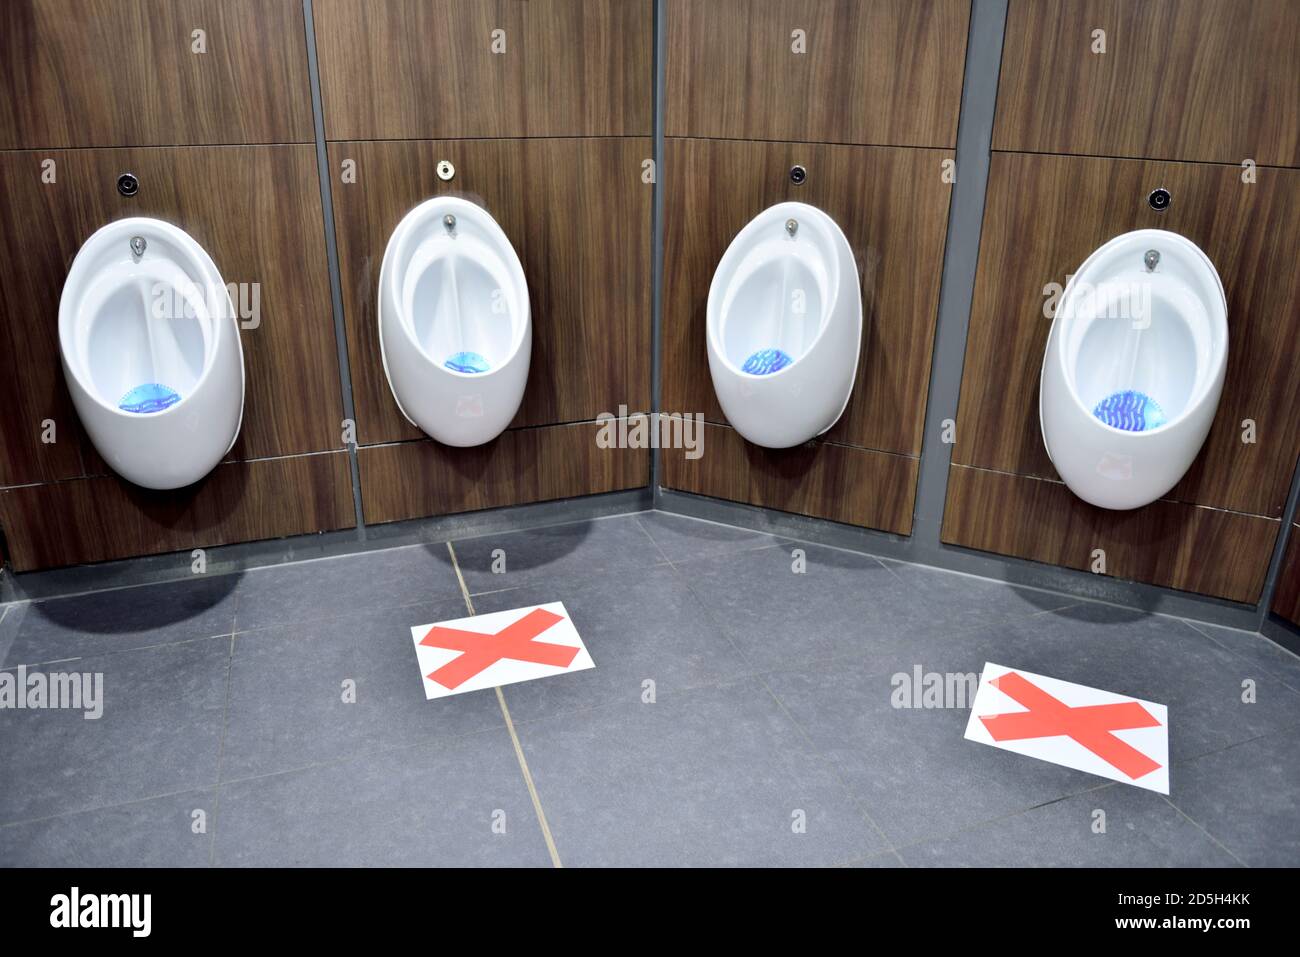 Urinale in der öffentlichen Toilette mit jedem anderen markiert nicht Aufgrund von Covid-19 und sozialer Distanzierung zu verwenden Stockfoto